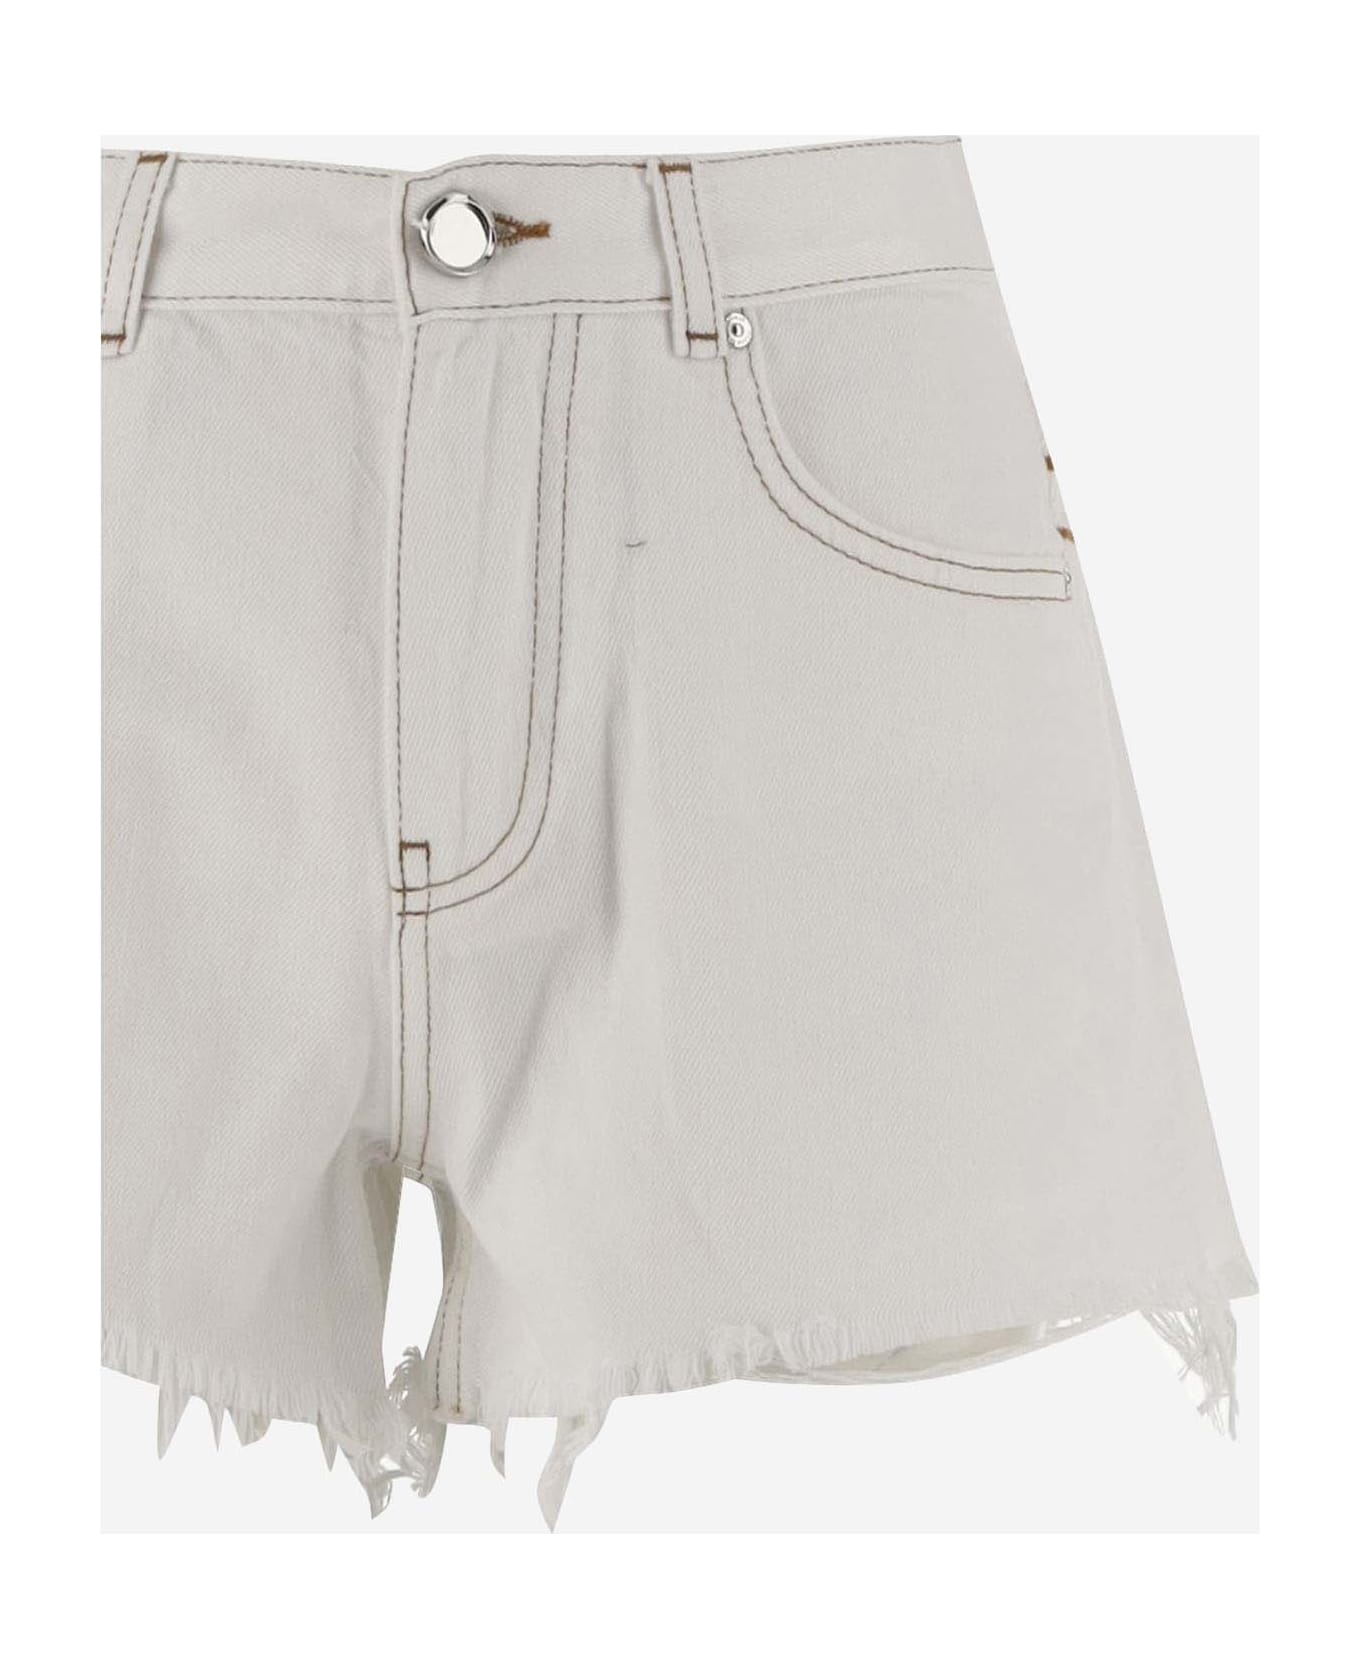 Pinko Cotton Denim Shorts - White